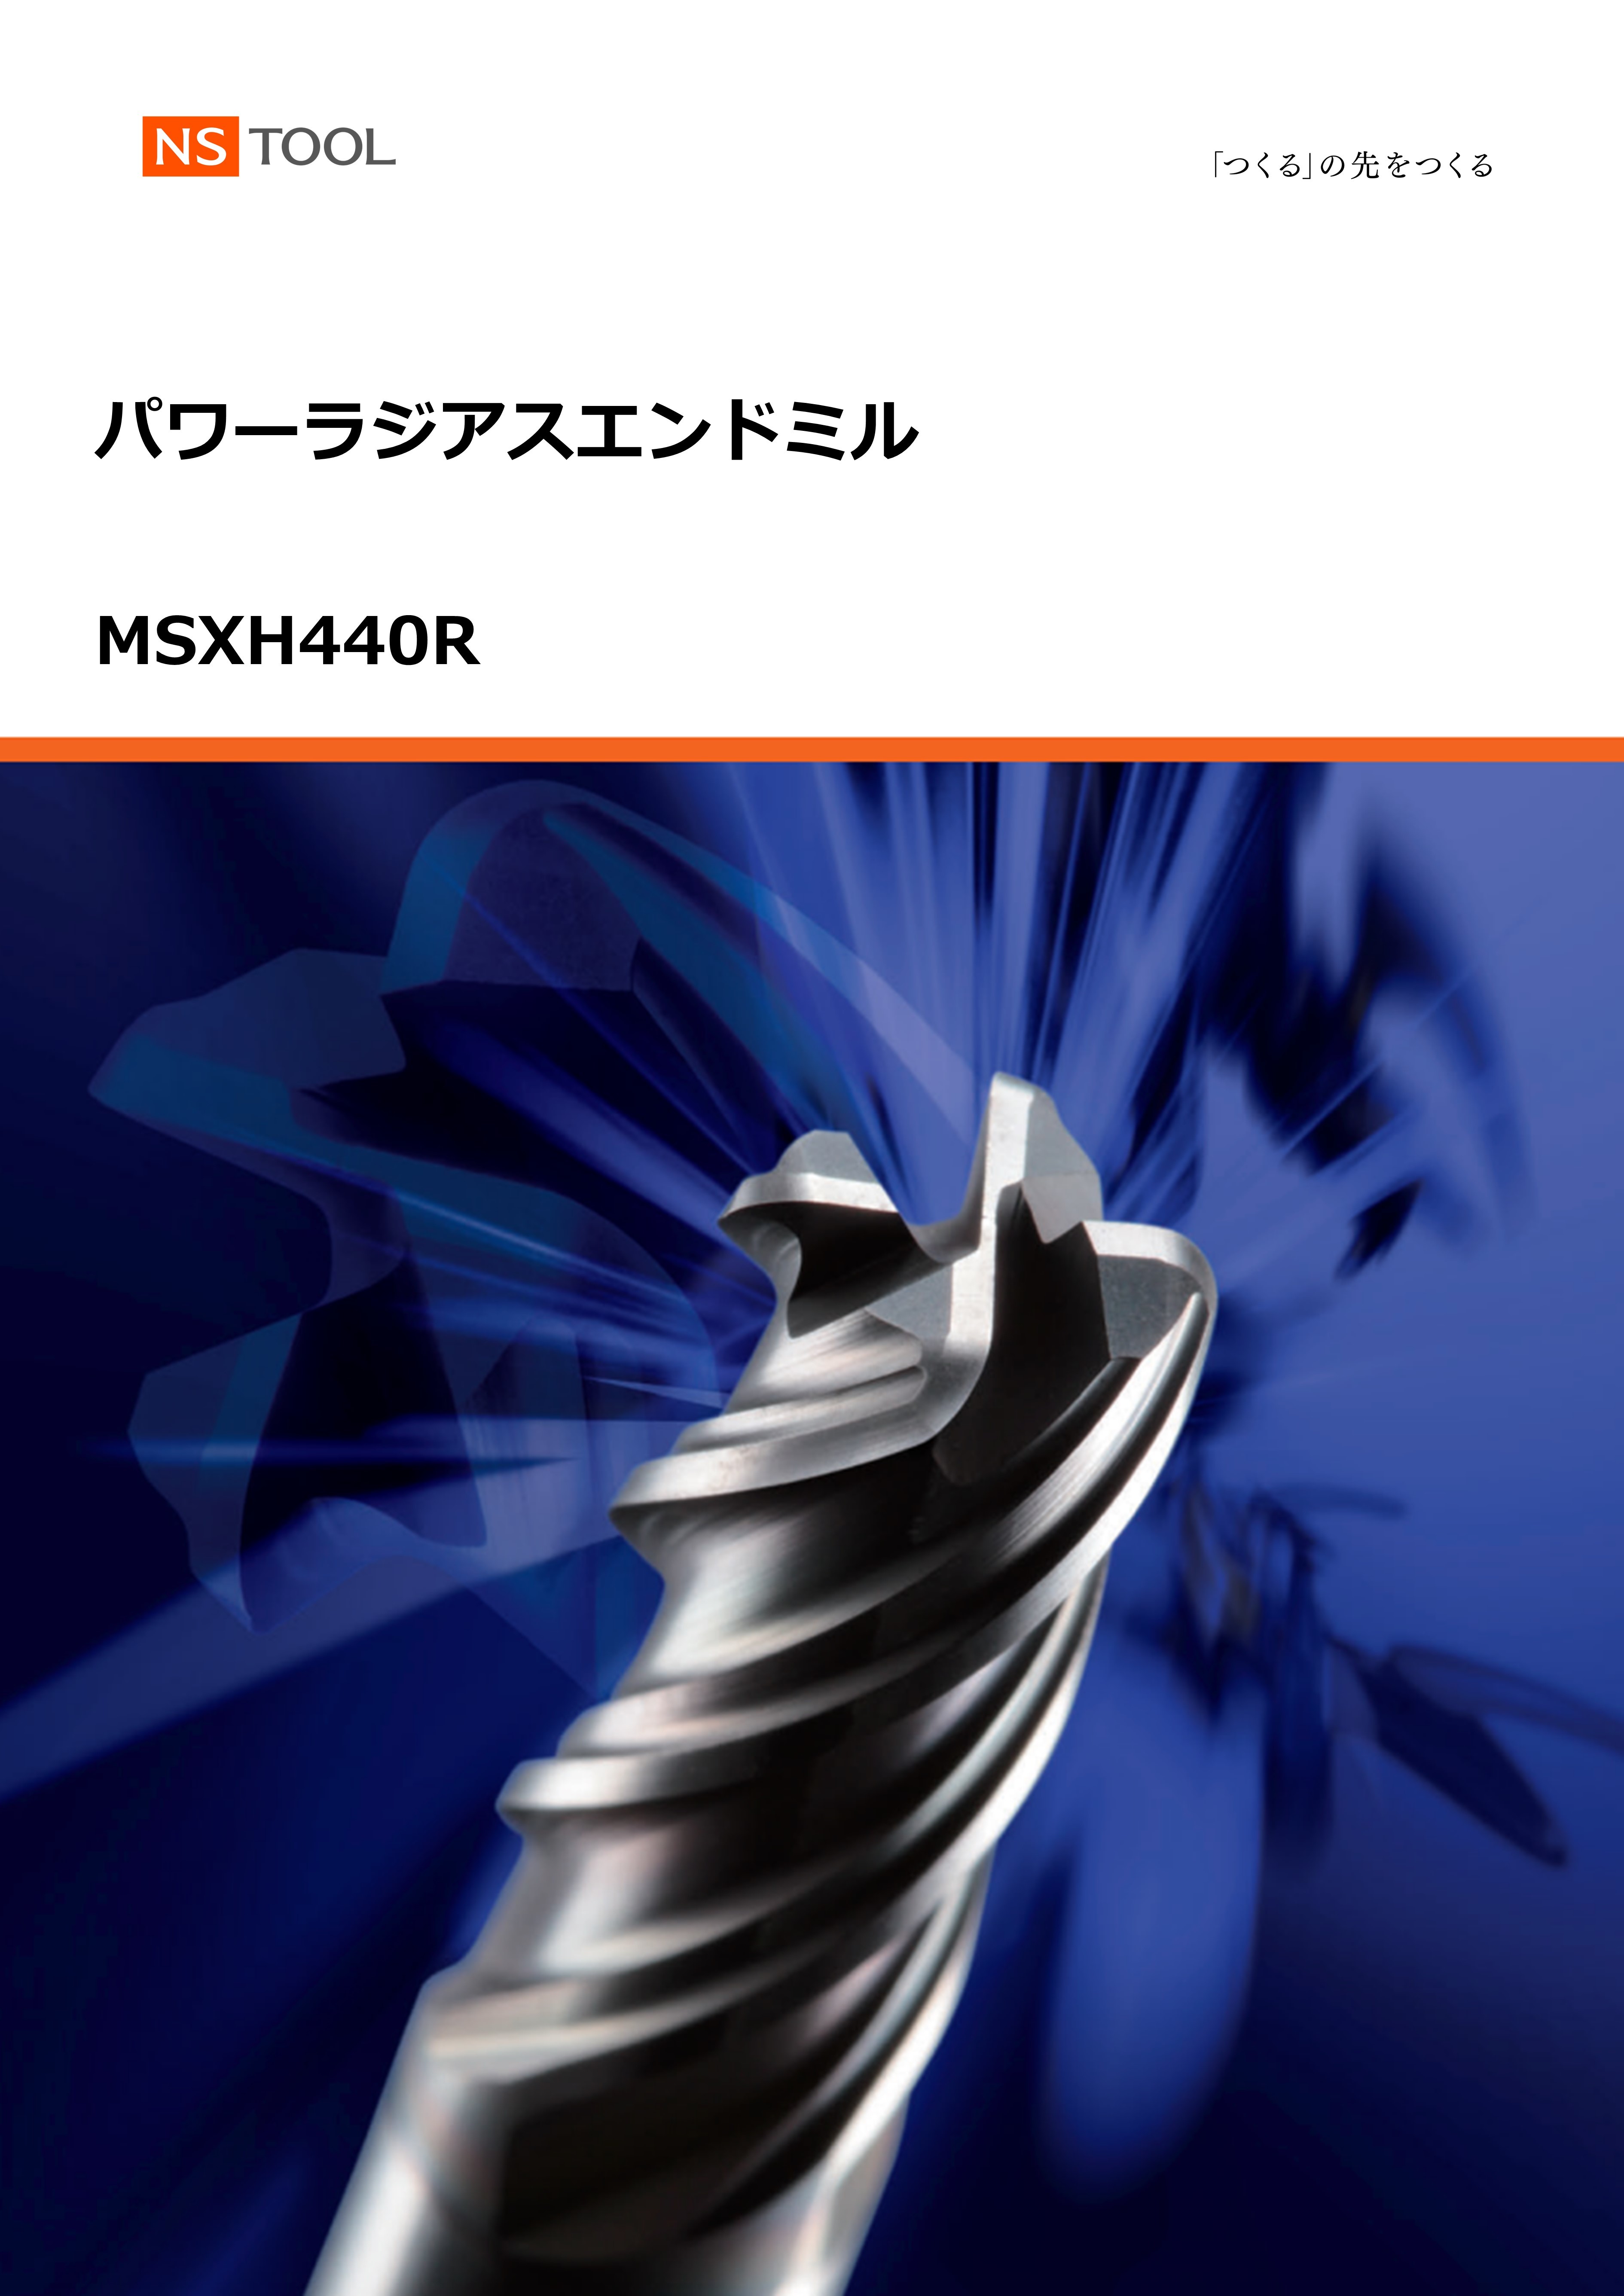 MSXH440R.jpg